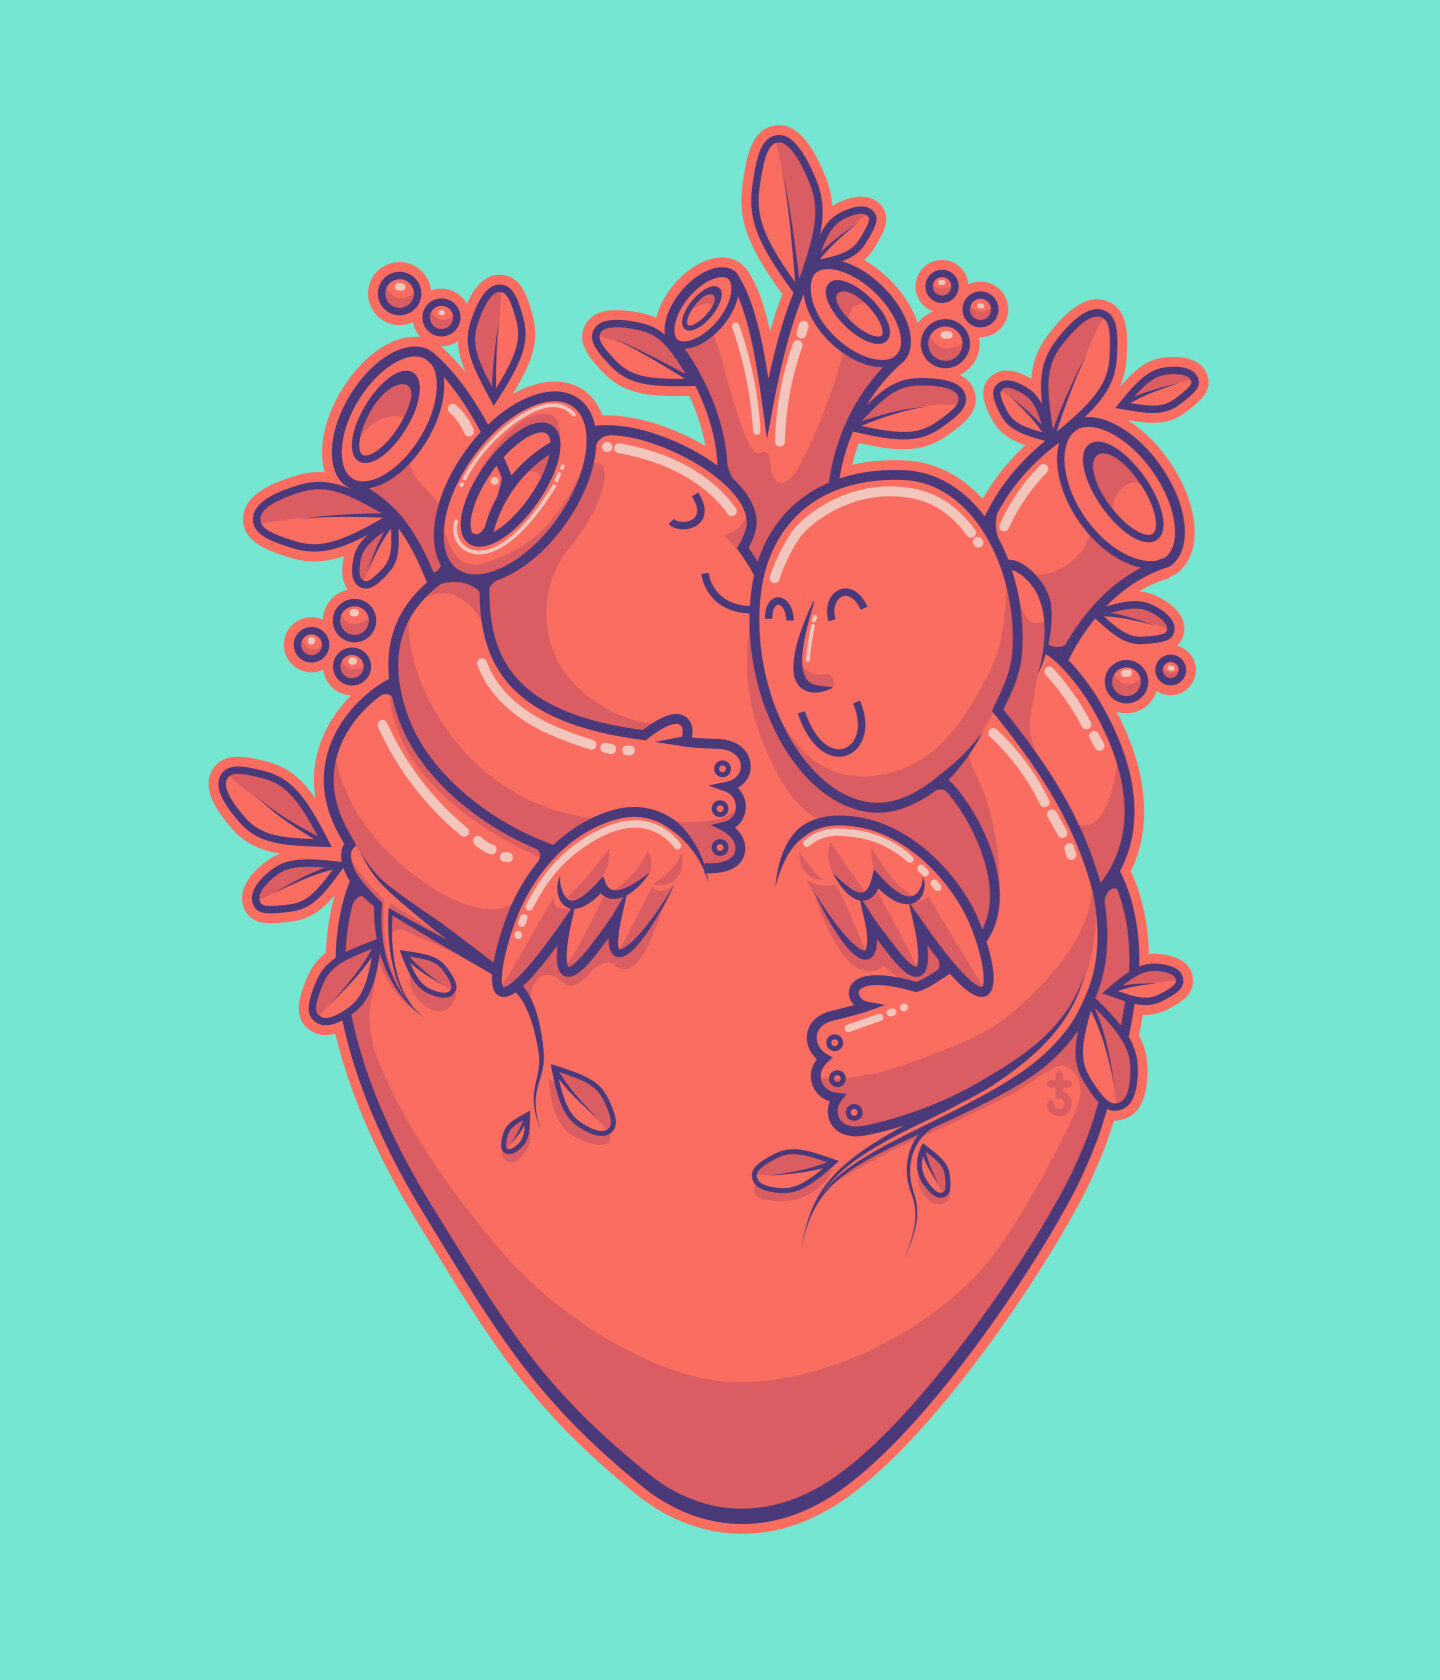 illustration_andre_levy_zhion_vector_pop_heart_organ_donation_hug_junge_helden.jpg